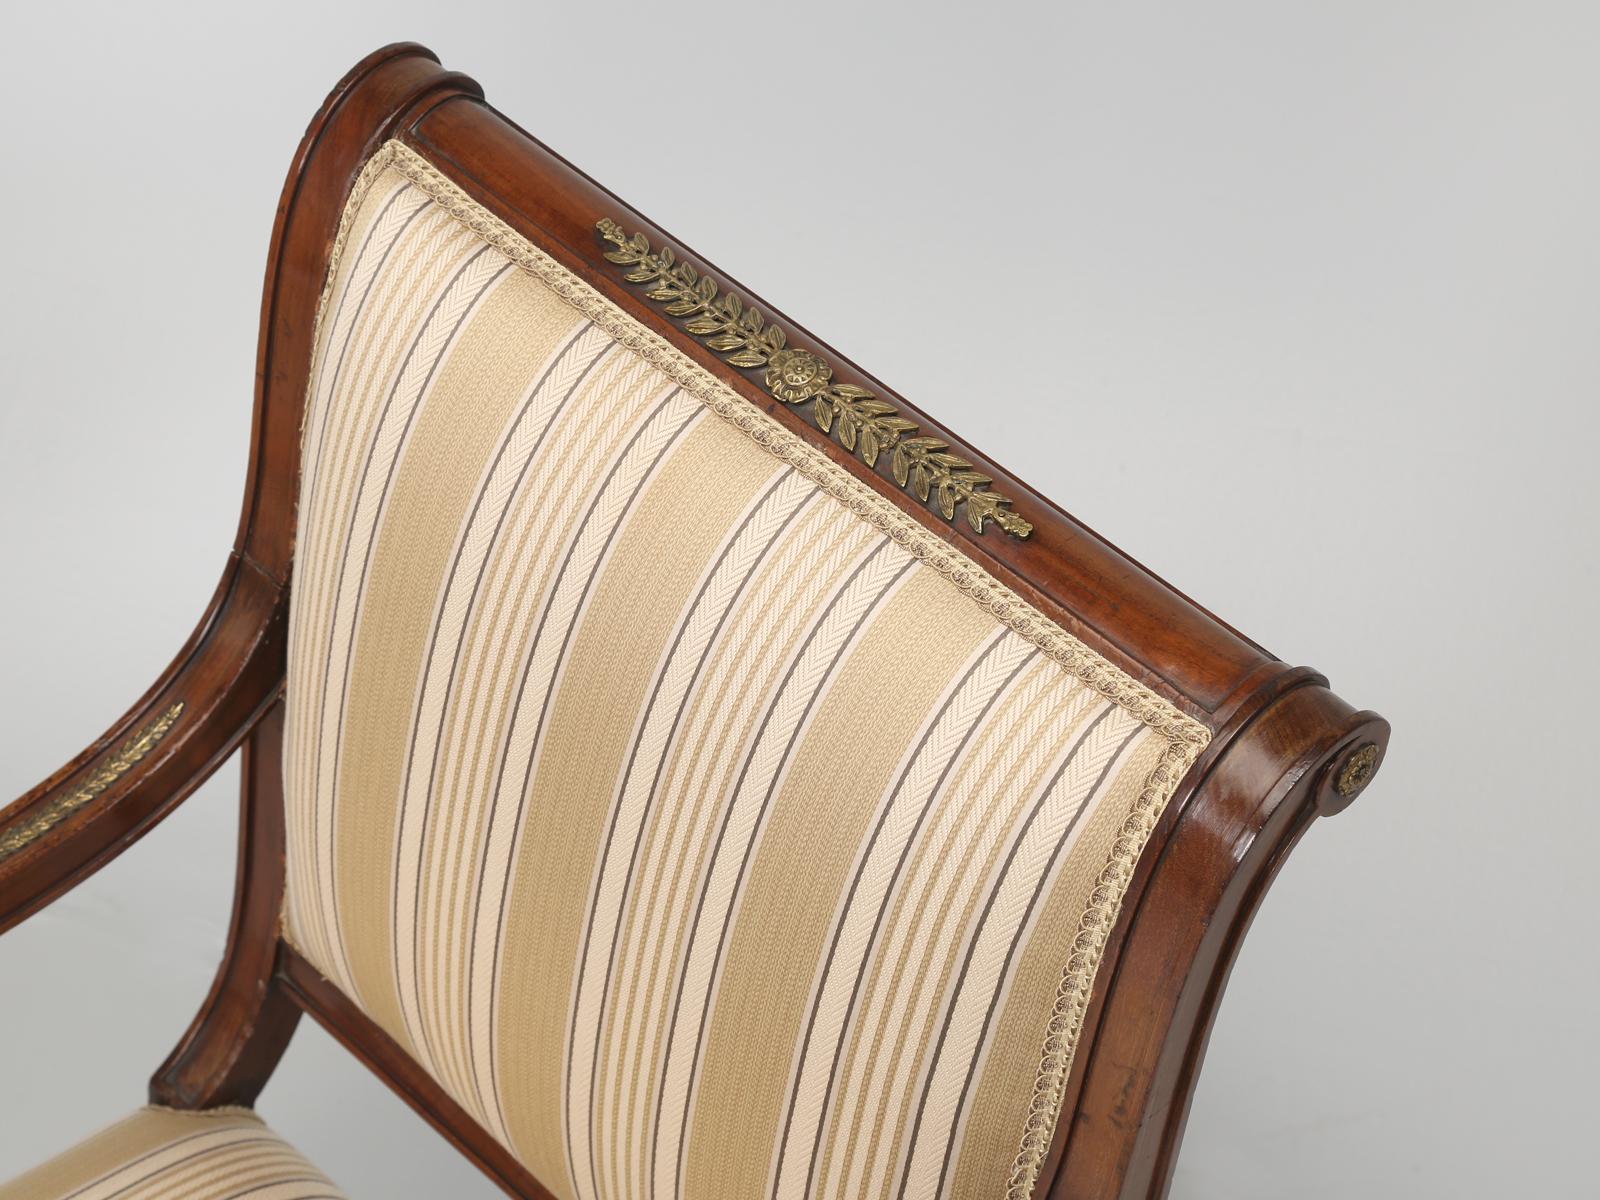 Paire de chaises en acajou, de style néo-empire, montées en bronze doré. Chaque fois que nous regardons un meuble ancien avec des moulages en bronze, nous examinons de près la qualité des détails en bronze, qui ont le plus souvent tendance à être